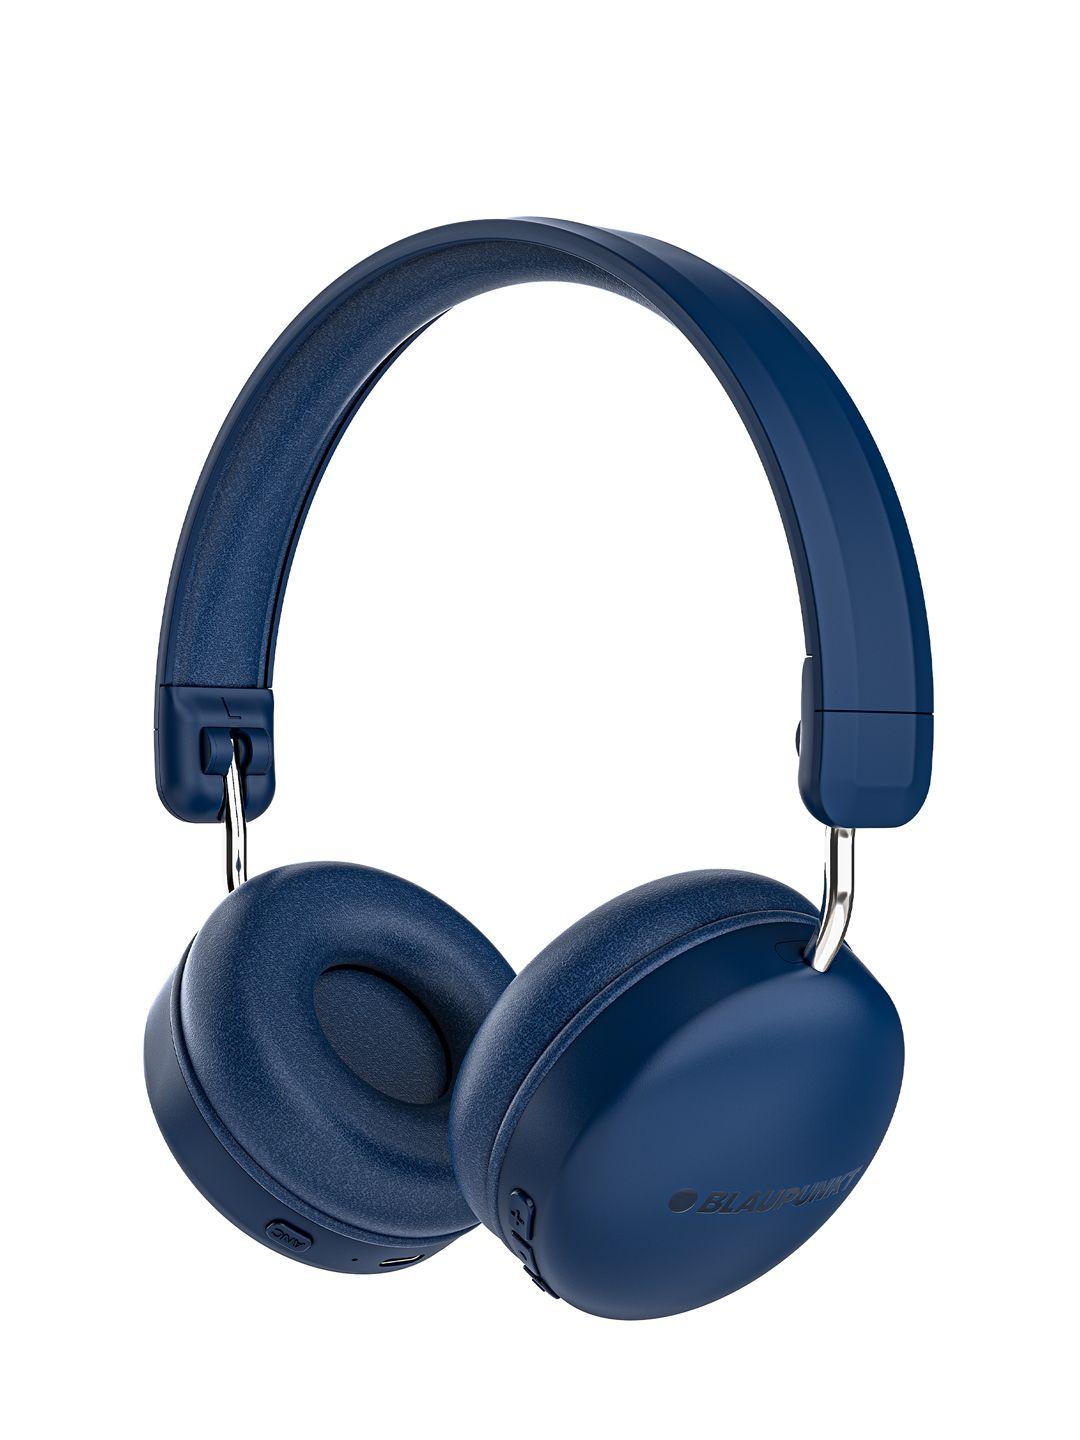 blaupunkt bh51 over ear headphones - blue